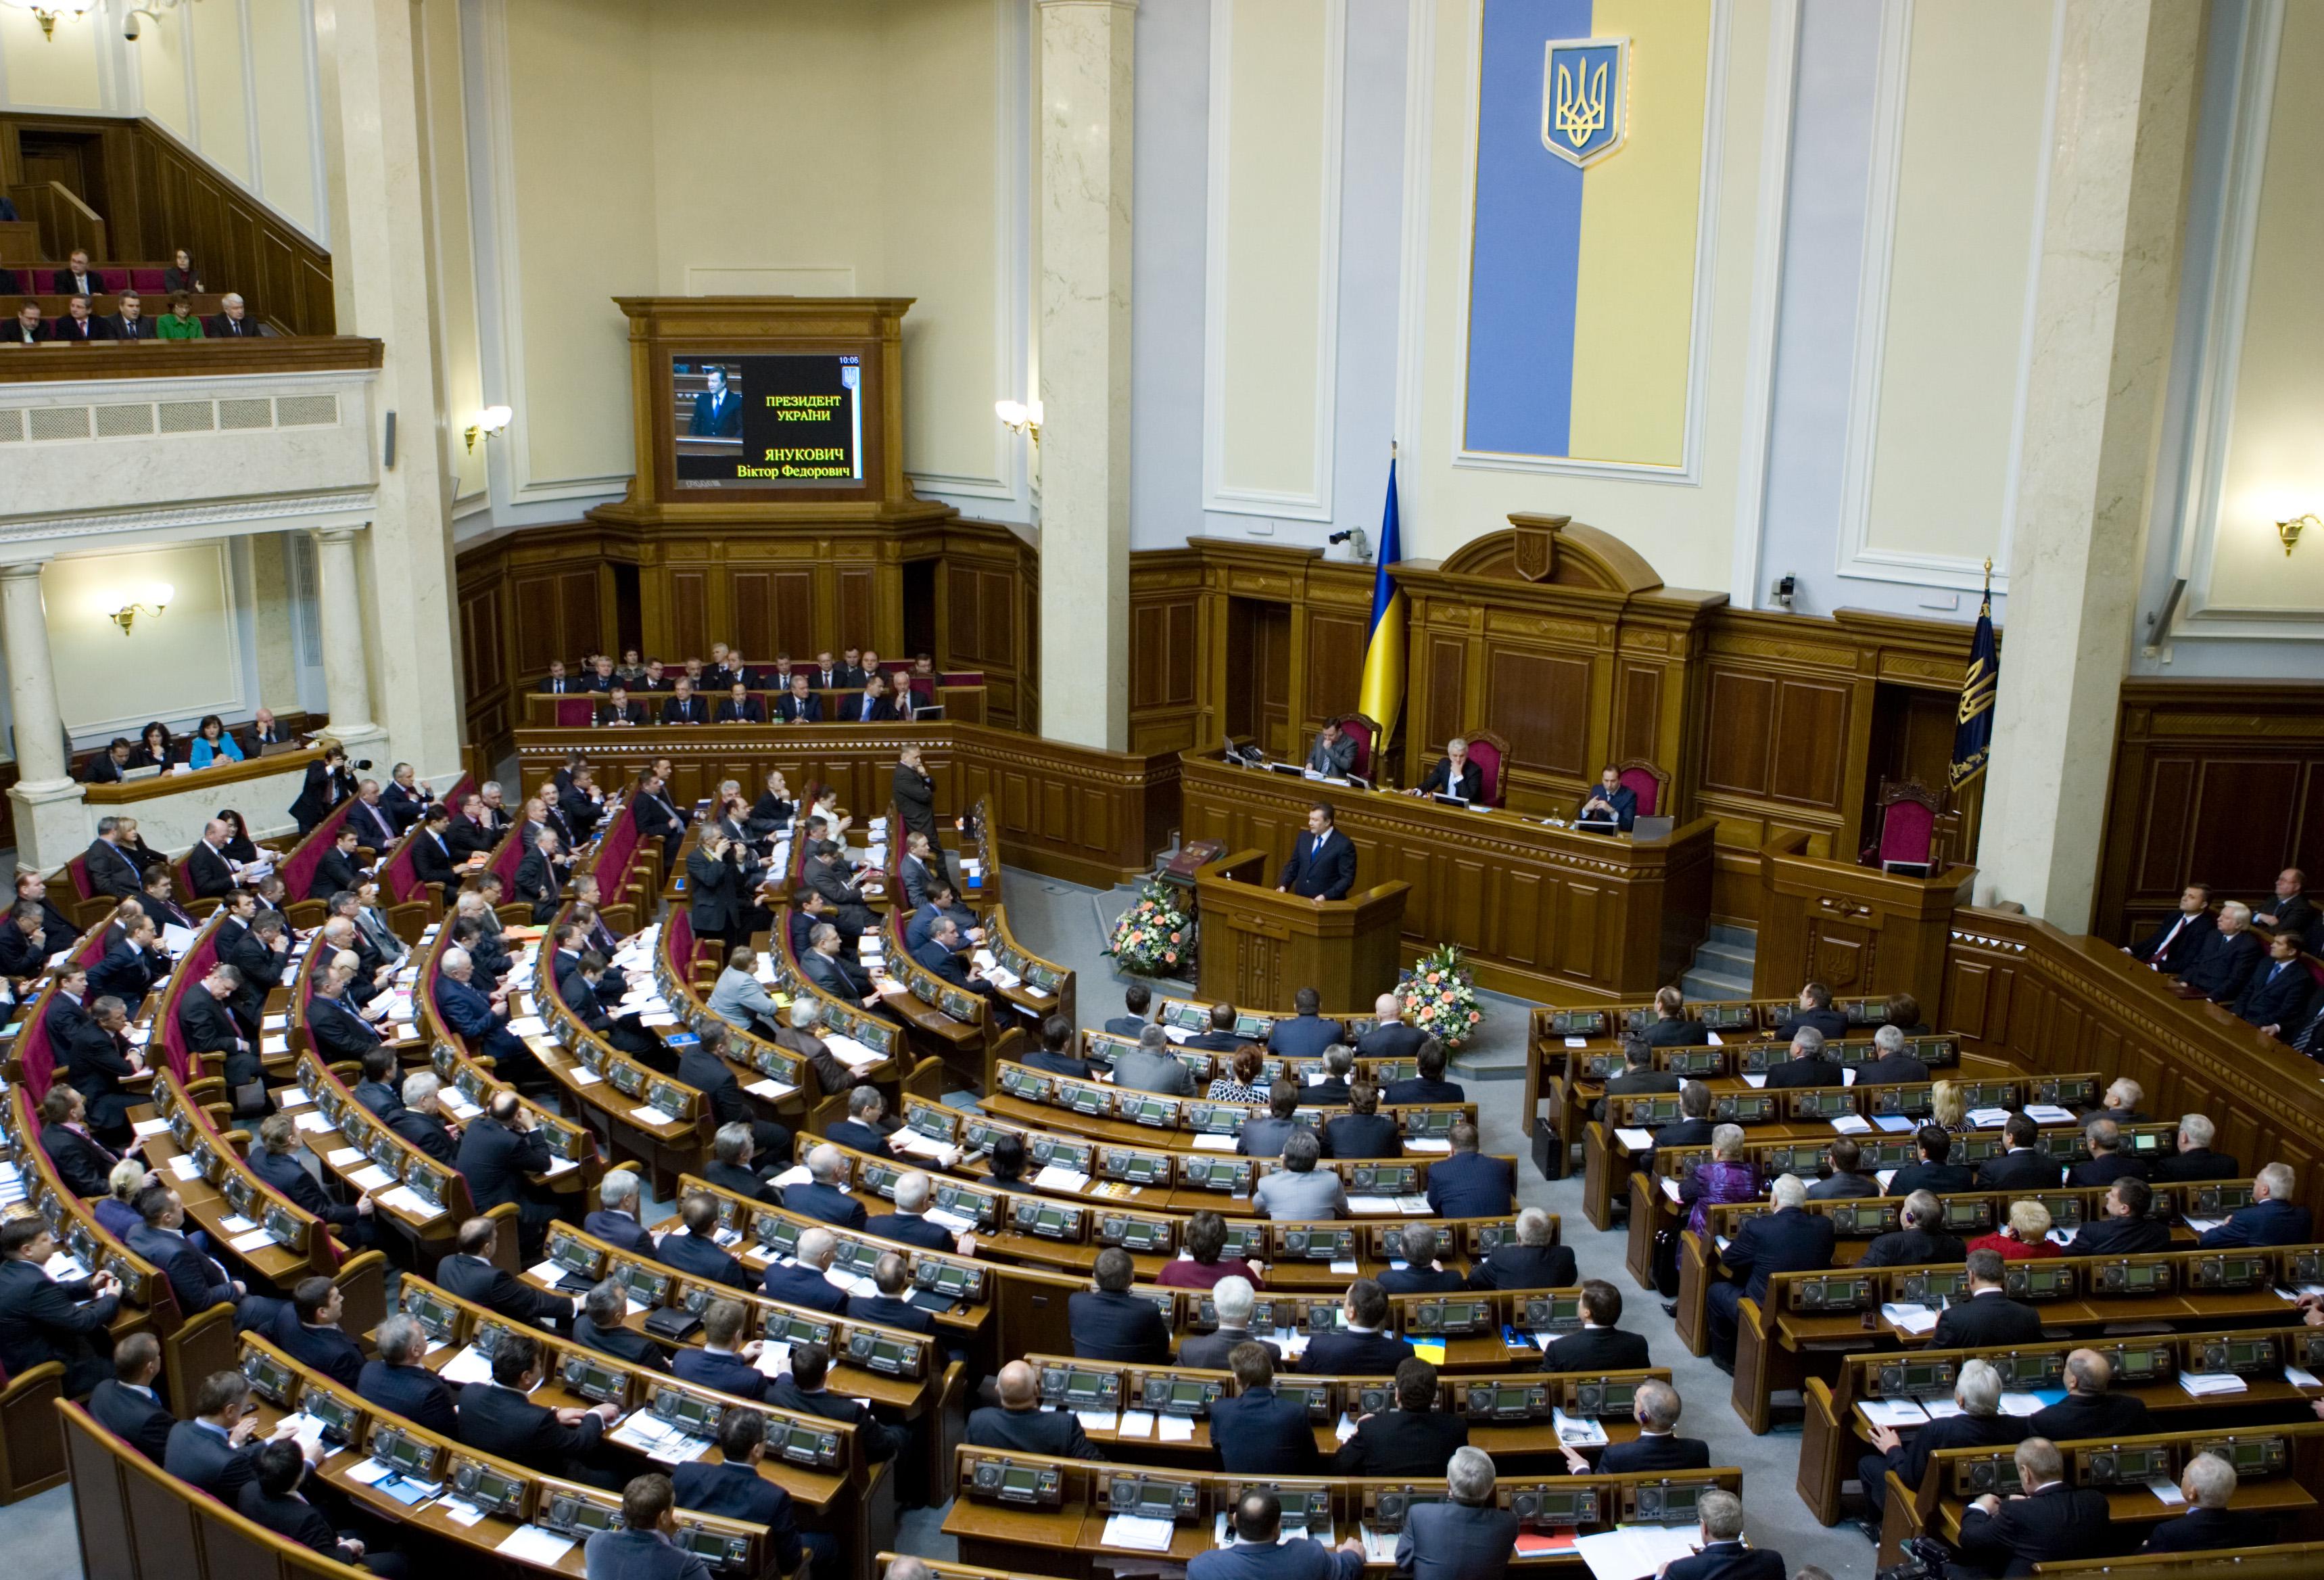 Верховна Рада Україна ухвалила закон «Про Національну поліцію» (реєстраційний № 2822).

